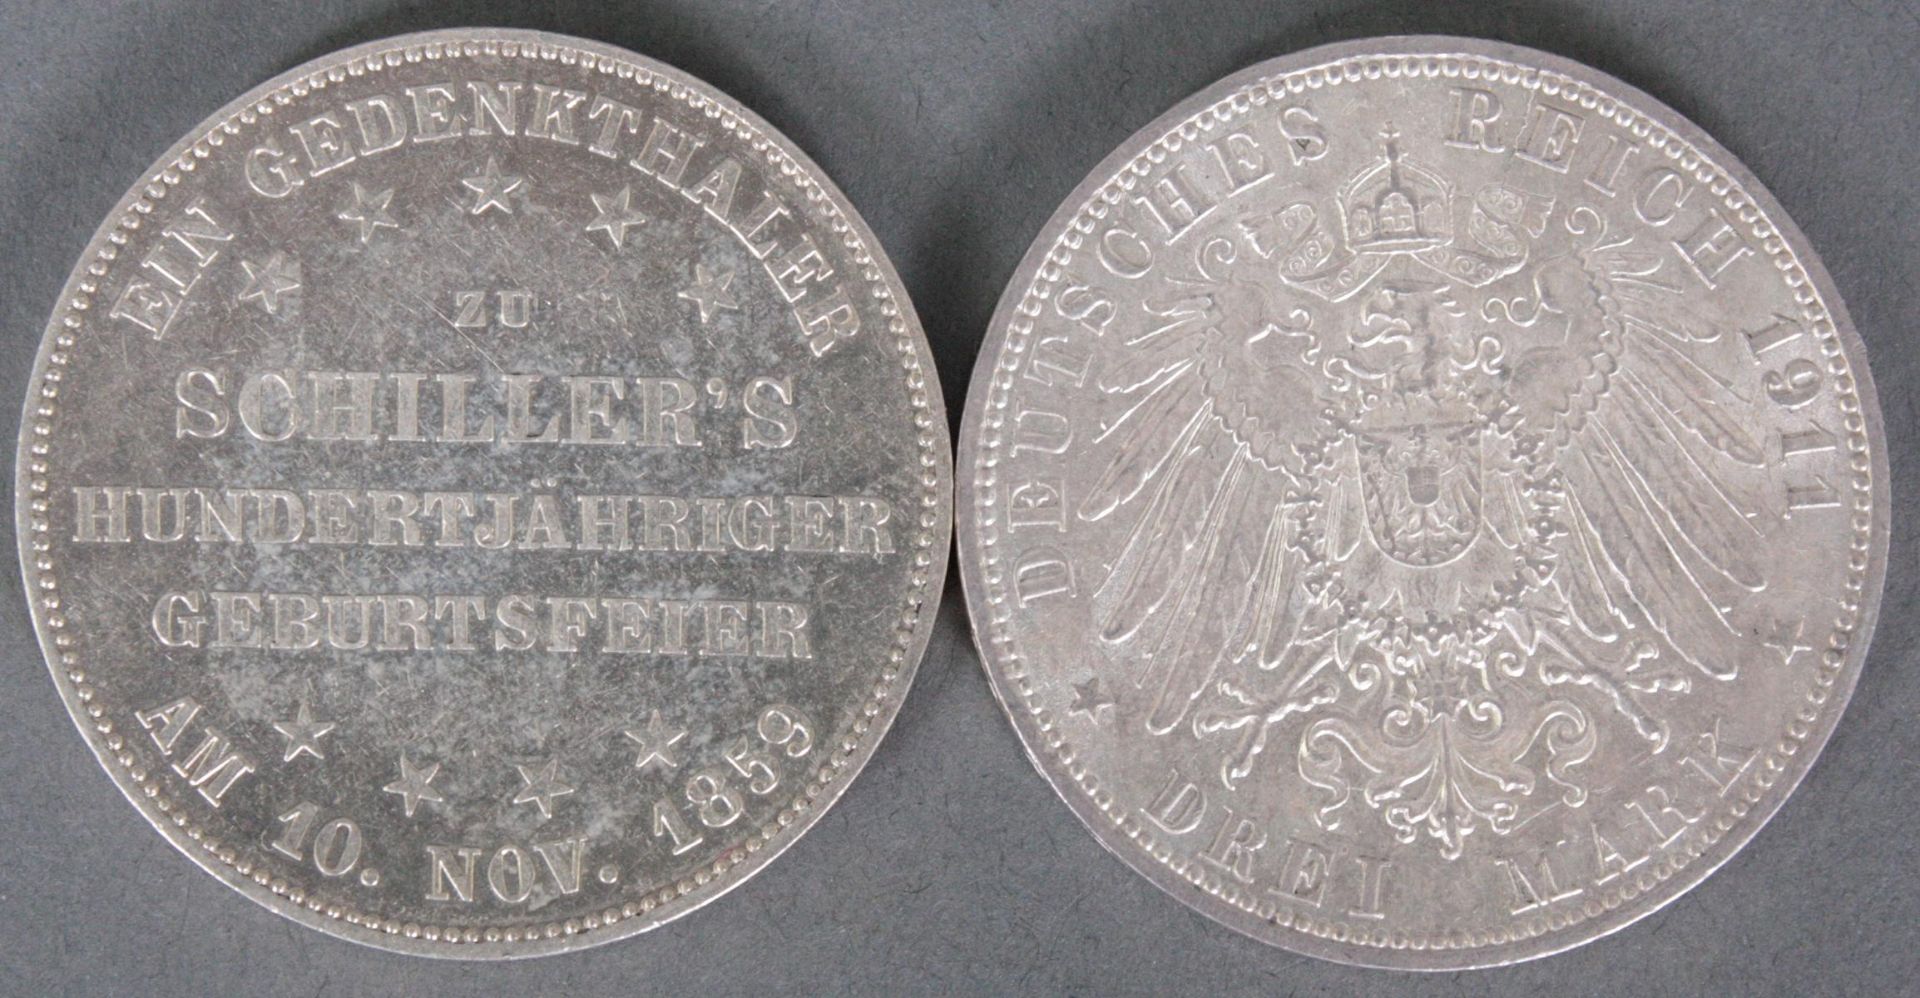 3 Mark Hamburg 1914 und Schiller Gedenktaler 1859 Frankfurt - Image 2 of 2